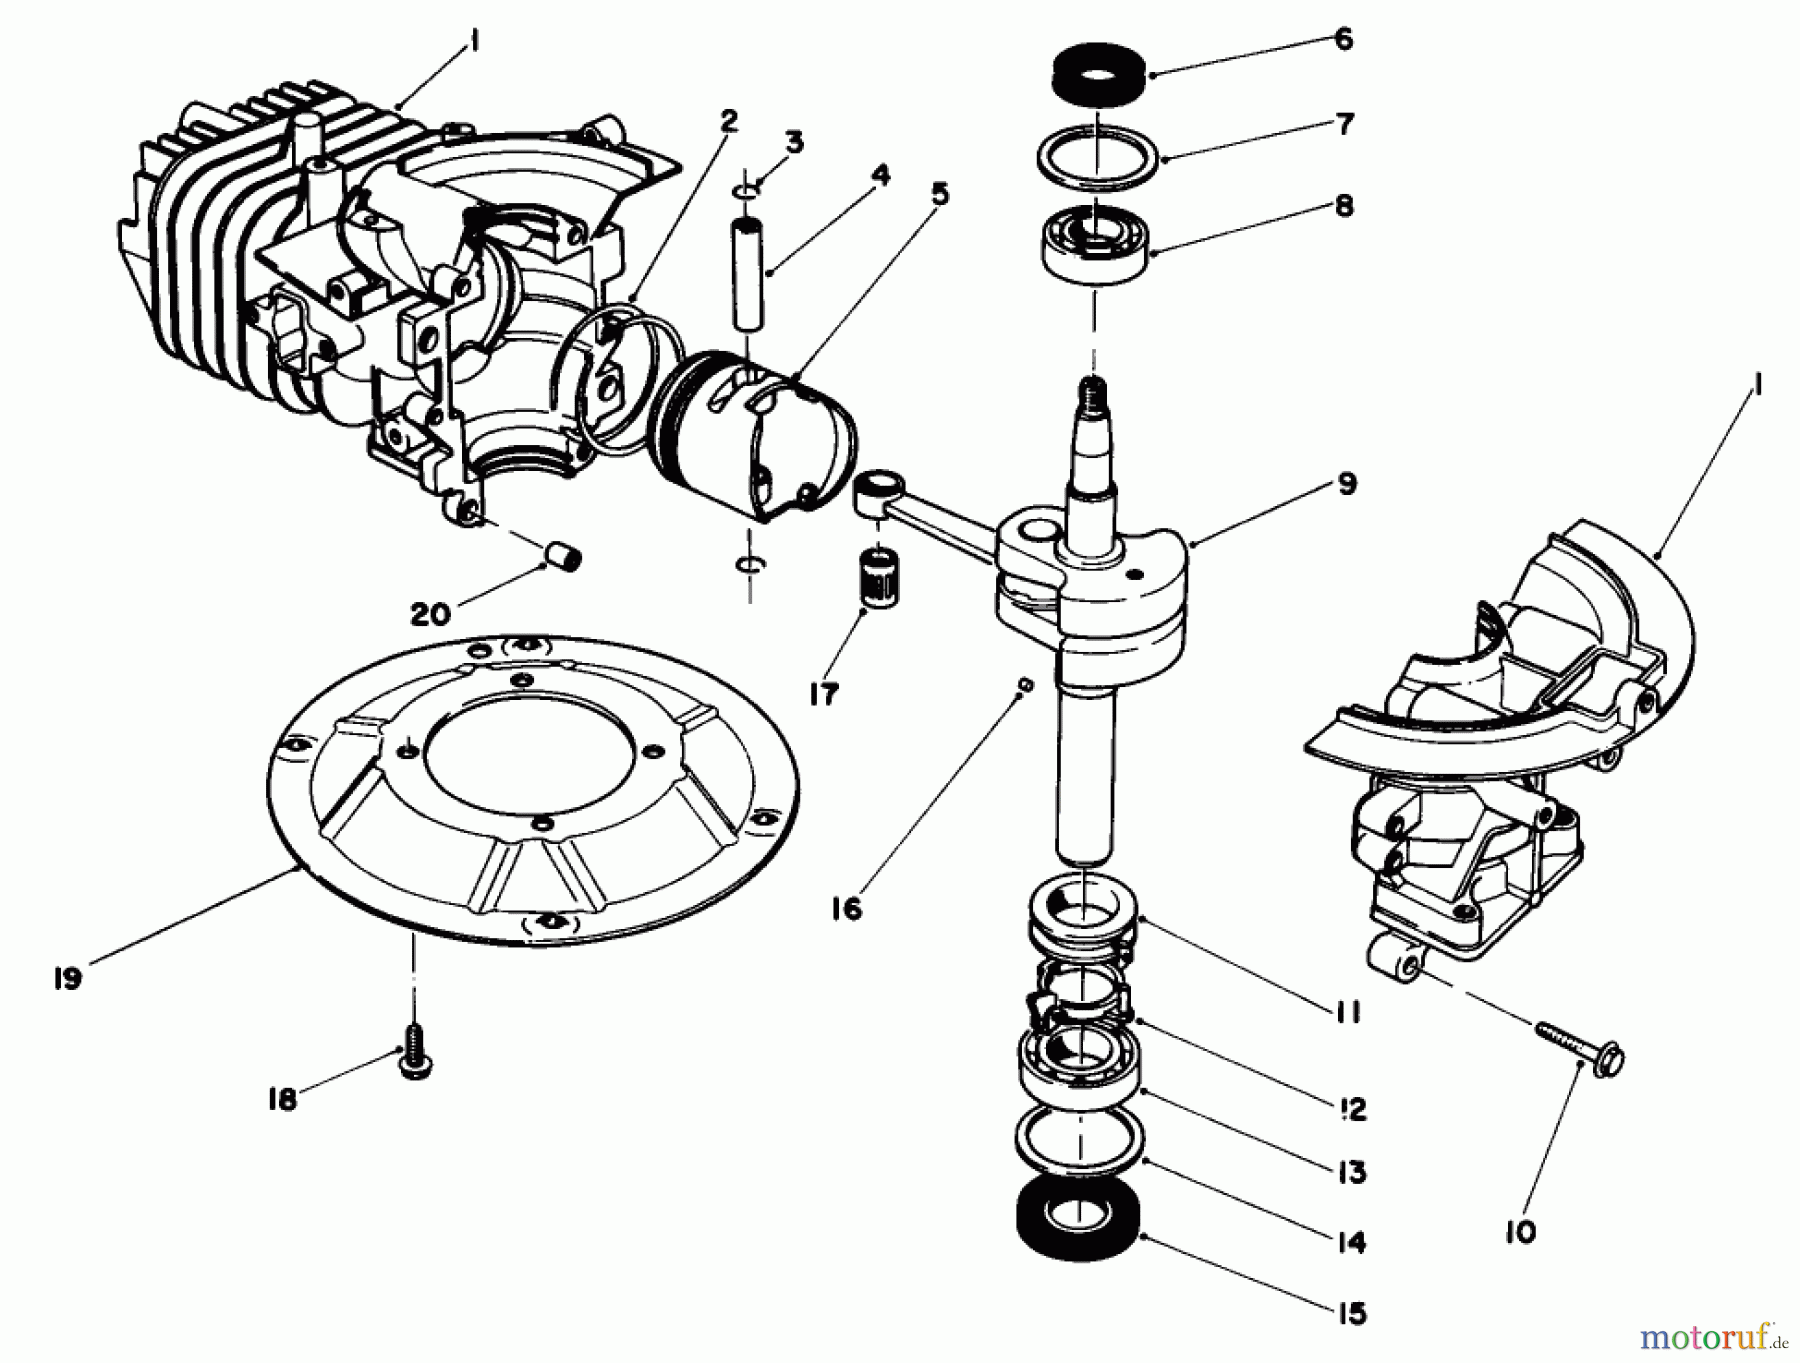  Toro Neu Mowers, Walk-Behind Seite 2 22700C - Toro Lawnmower, 1988 (8000001-8999999) ENGINE ASSEMBLY MODEL NO. 47PH7 #1